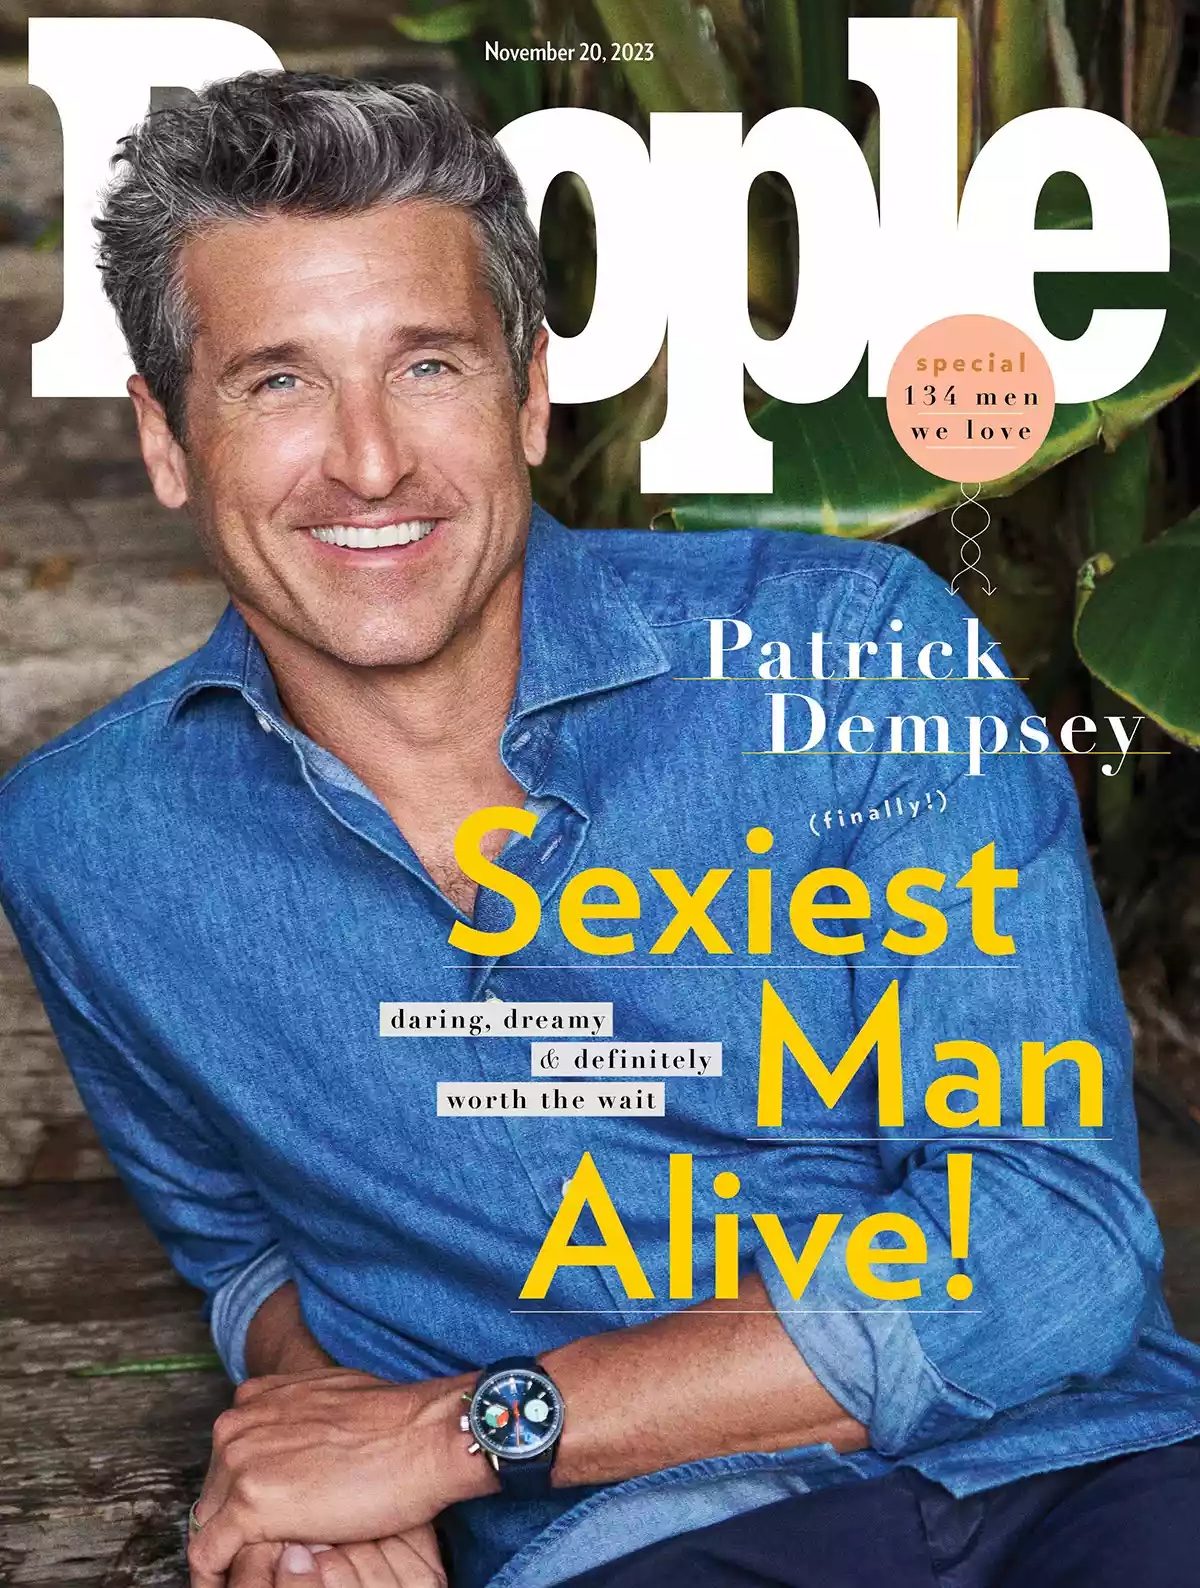 Патрик Демпси стал самым сексуальным мужчиной года по версии People